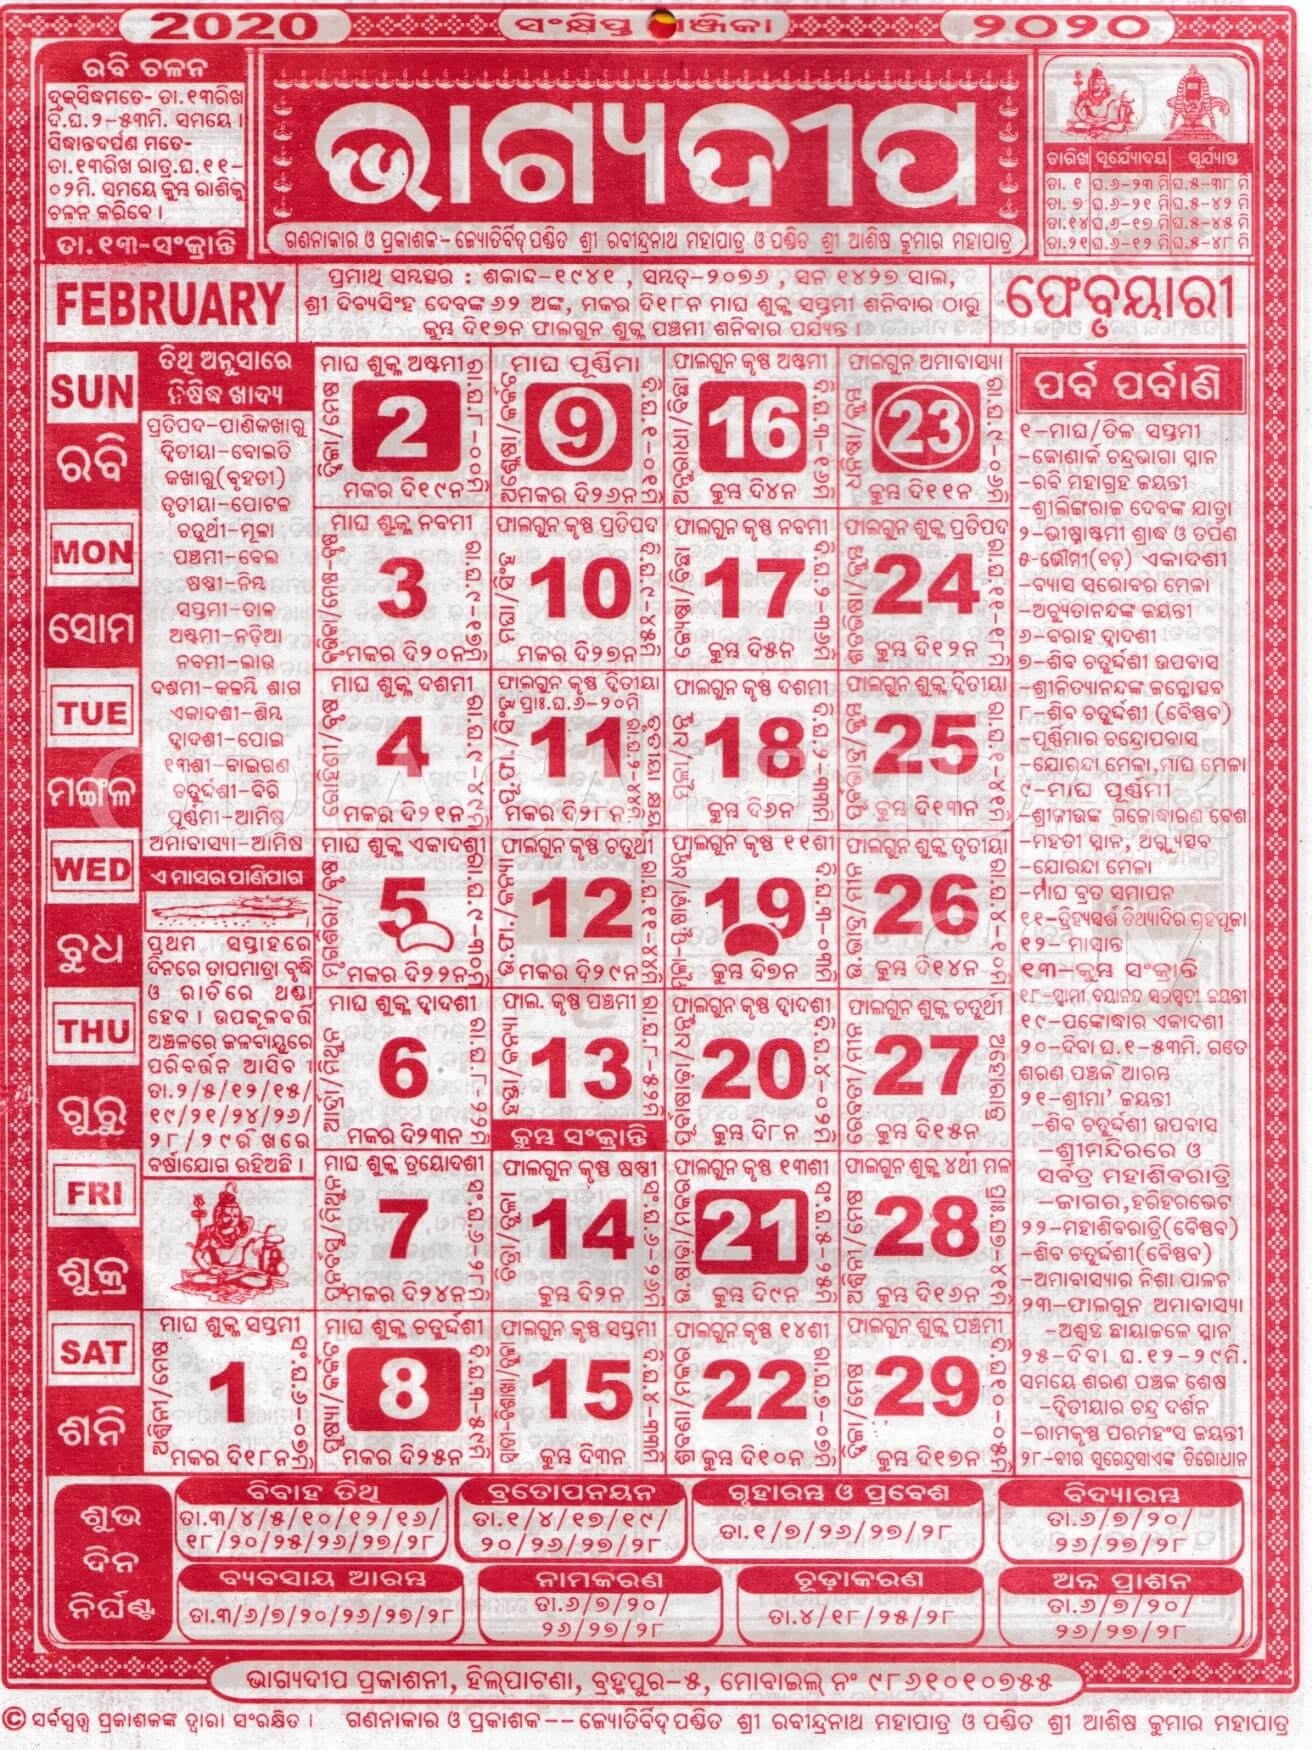 Bhagyadeep Odia Calendar February 2020 - Download Hd Quality July 2021 Calendar Odia